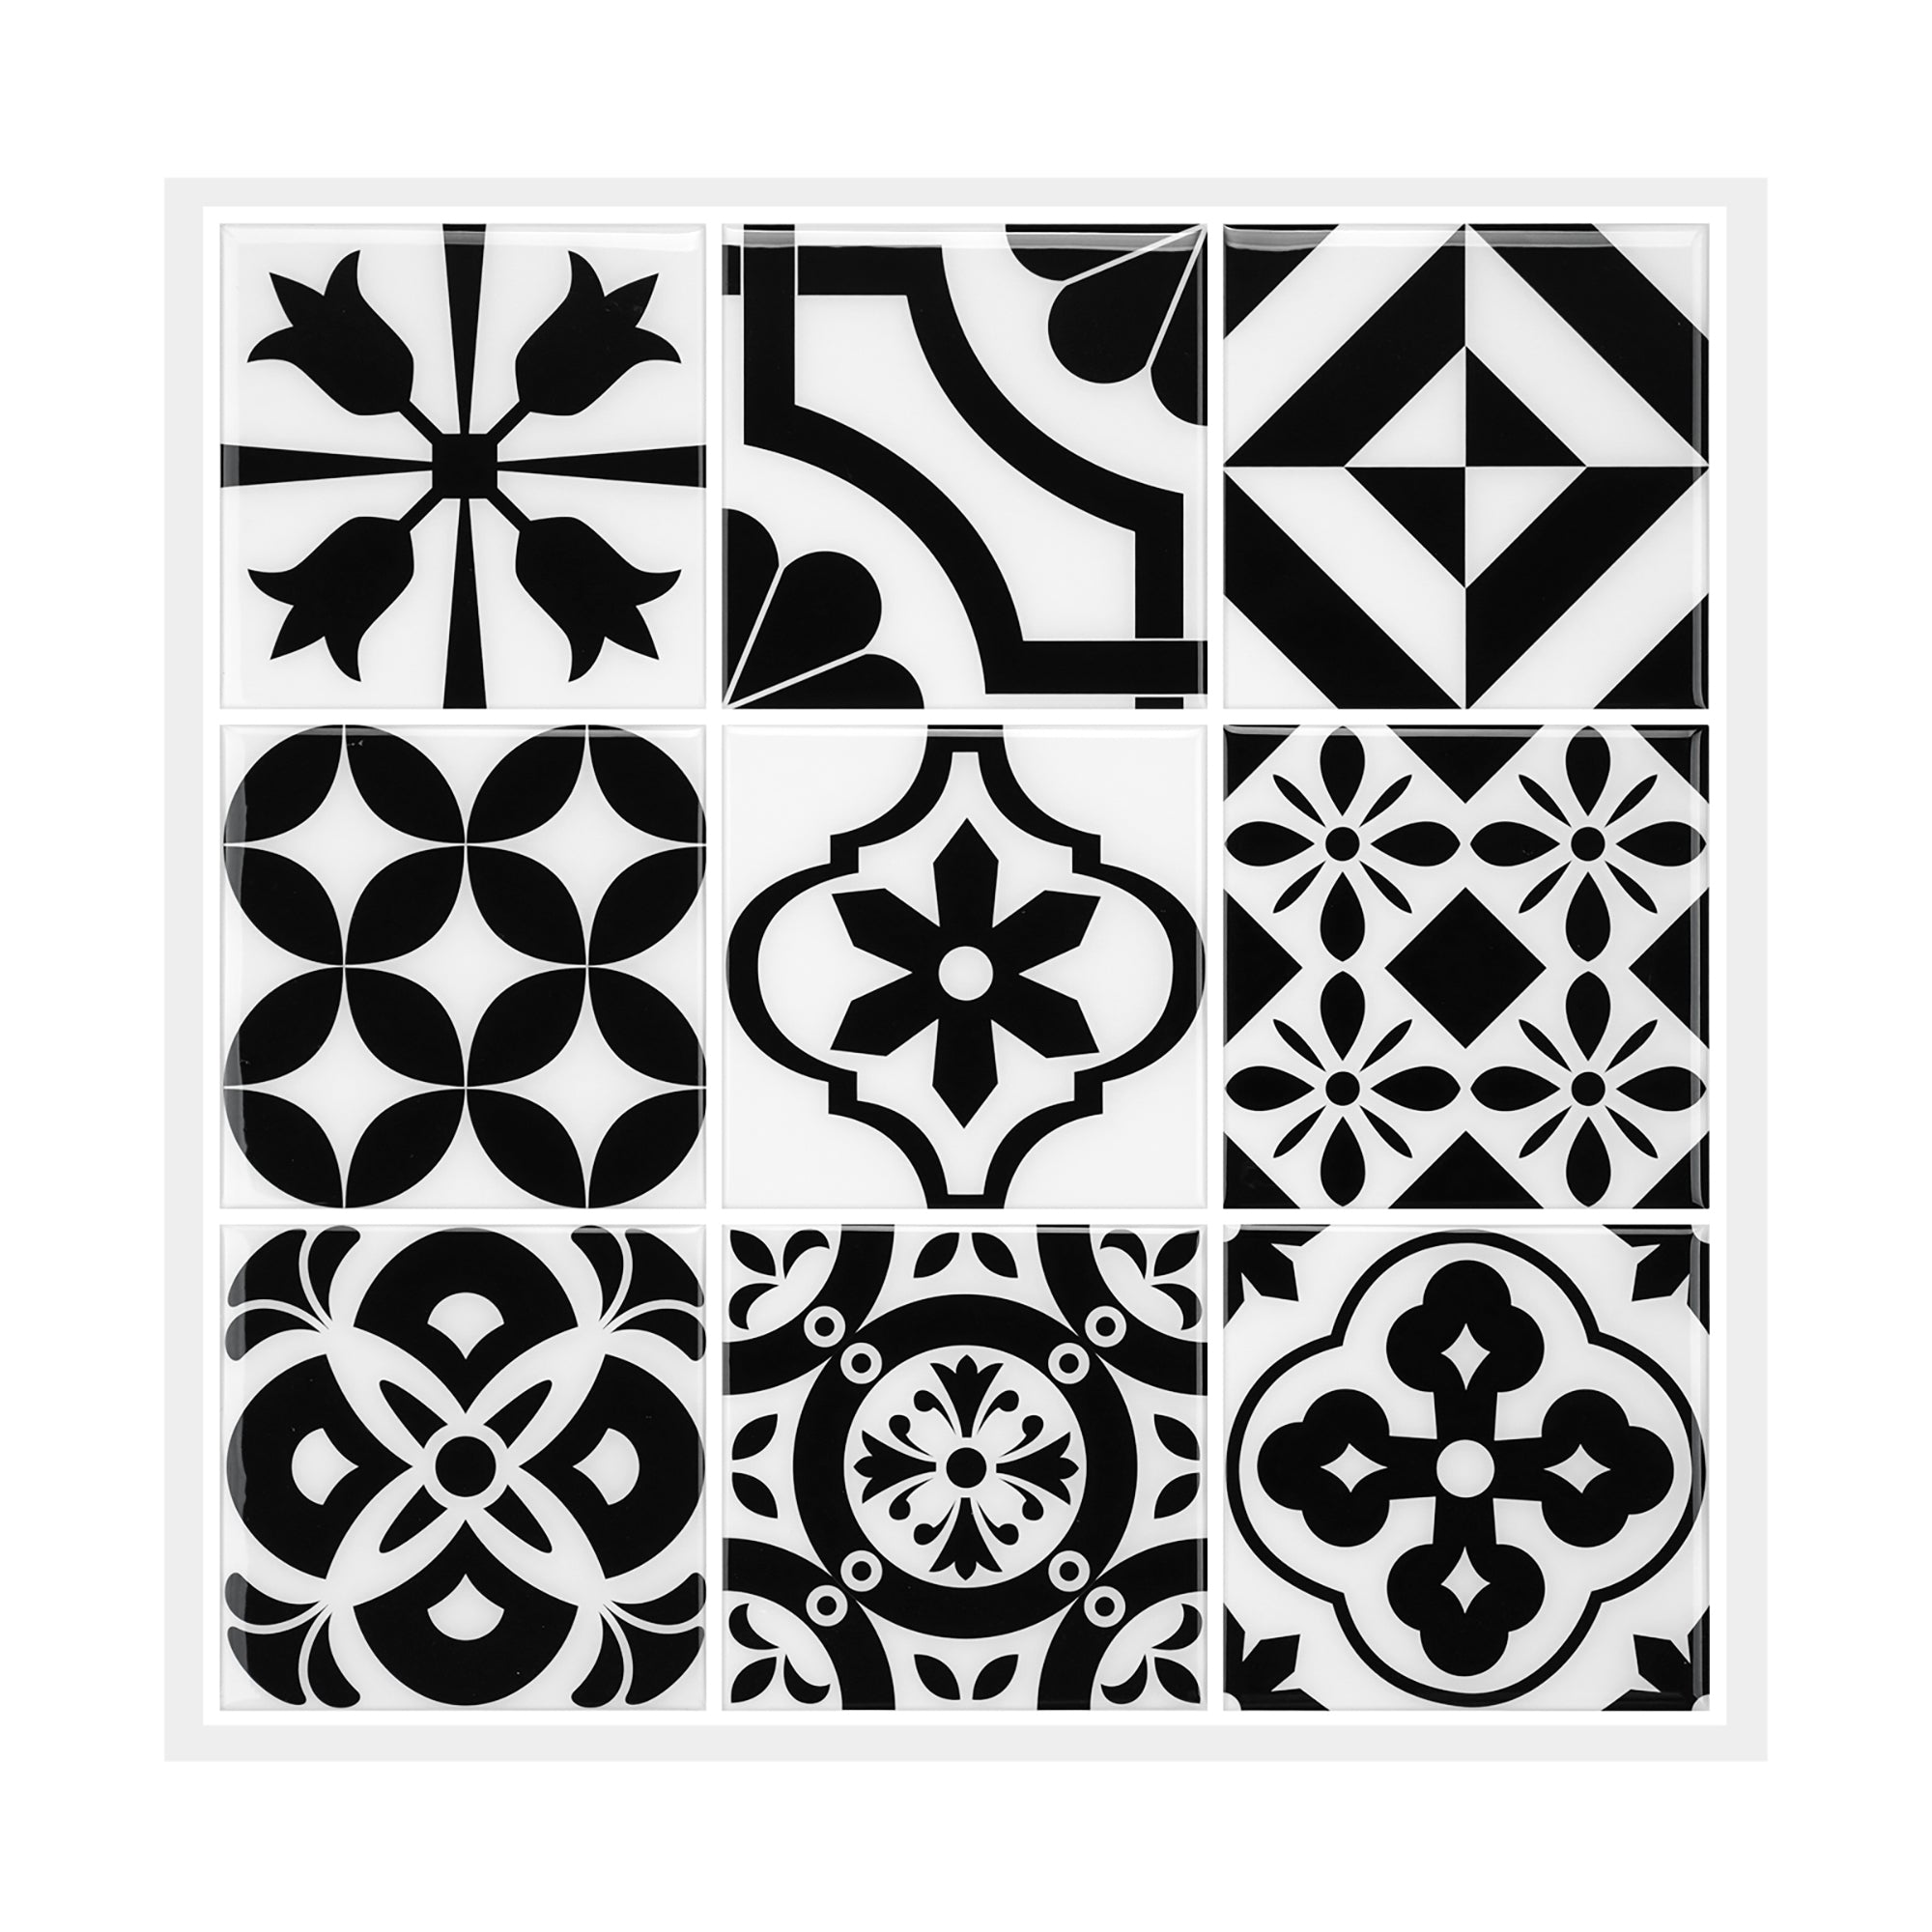 Baroque 12 x 12 Peel and Stick Tile Backsplash for Kitchen – LSDECO-TILE